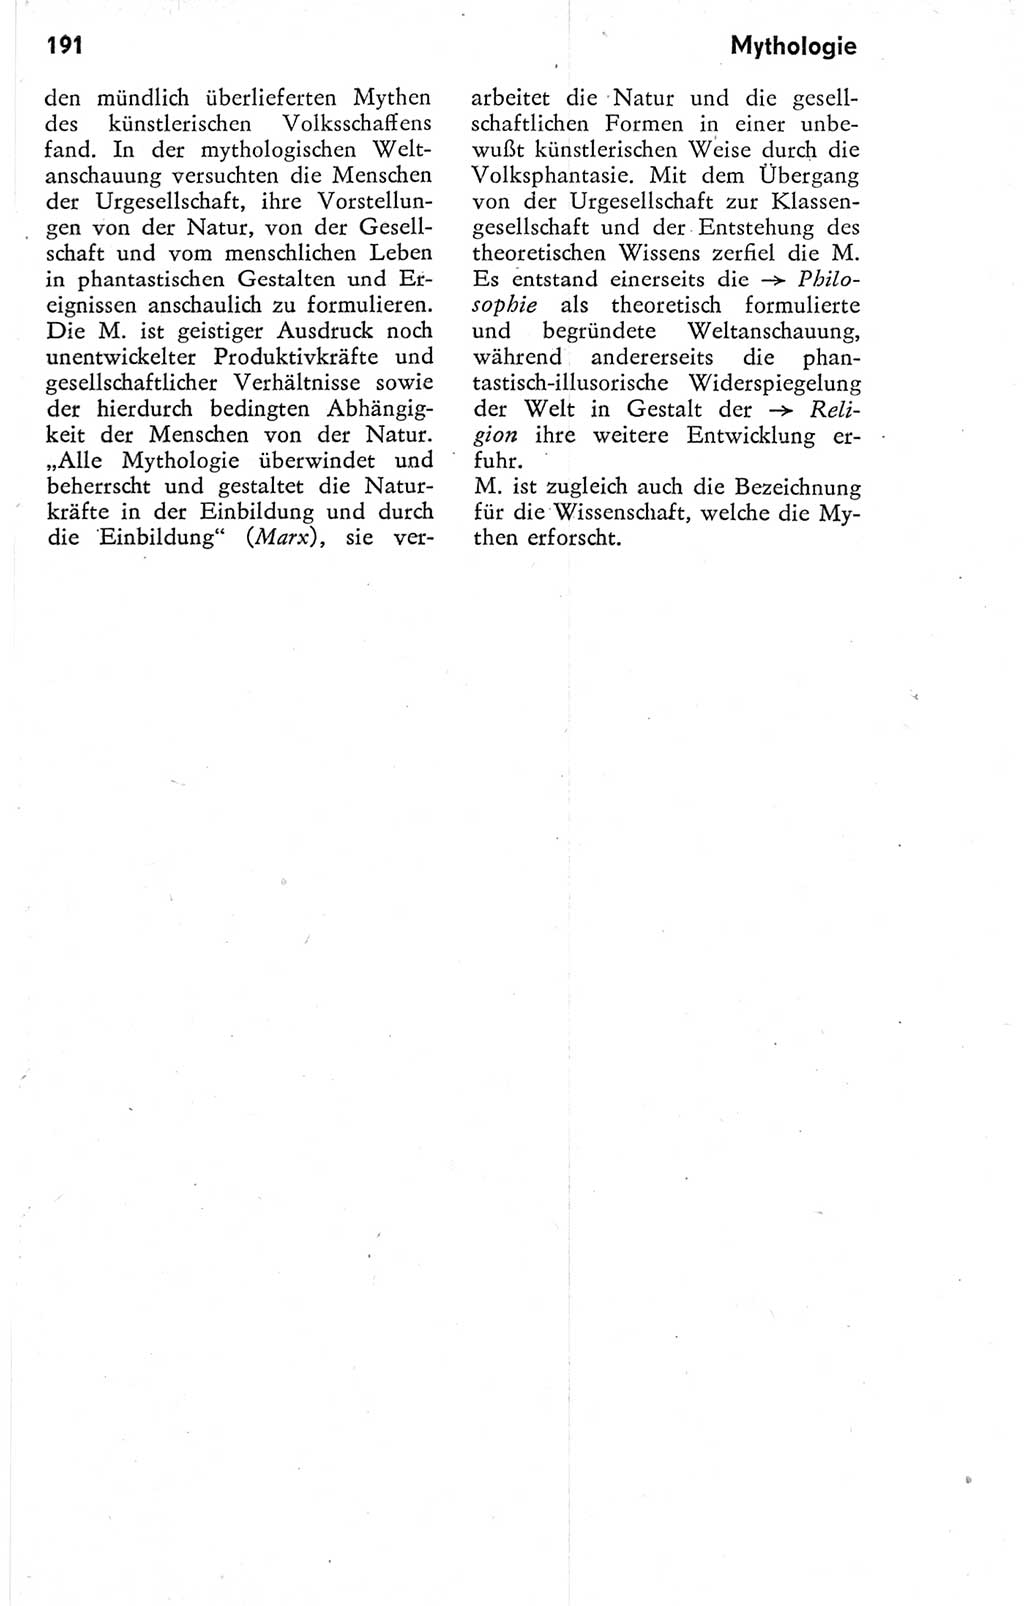 Kleines Wörterbuch der marxistisch-leninistischen Philosophie [Deutsche Demokratische Republik (DDR)] 1974, Seite 191 (Kl. Wb. ML Phil. DDR 1974, S. 191)